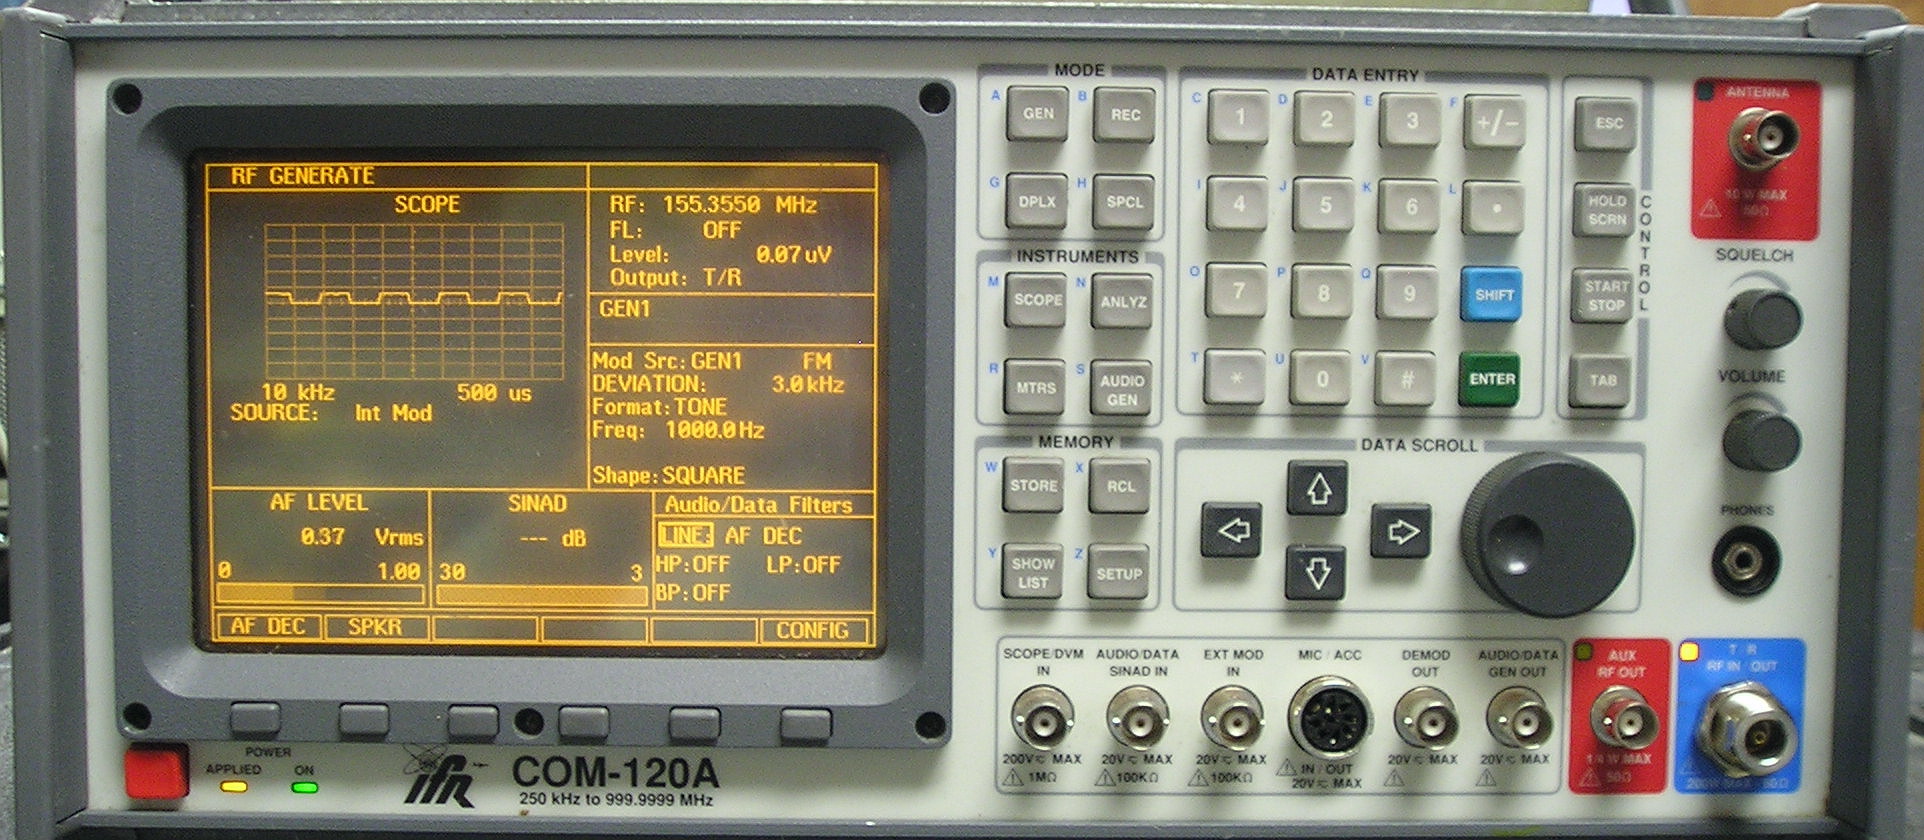 Aeroflex-IFR COM120A